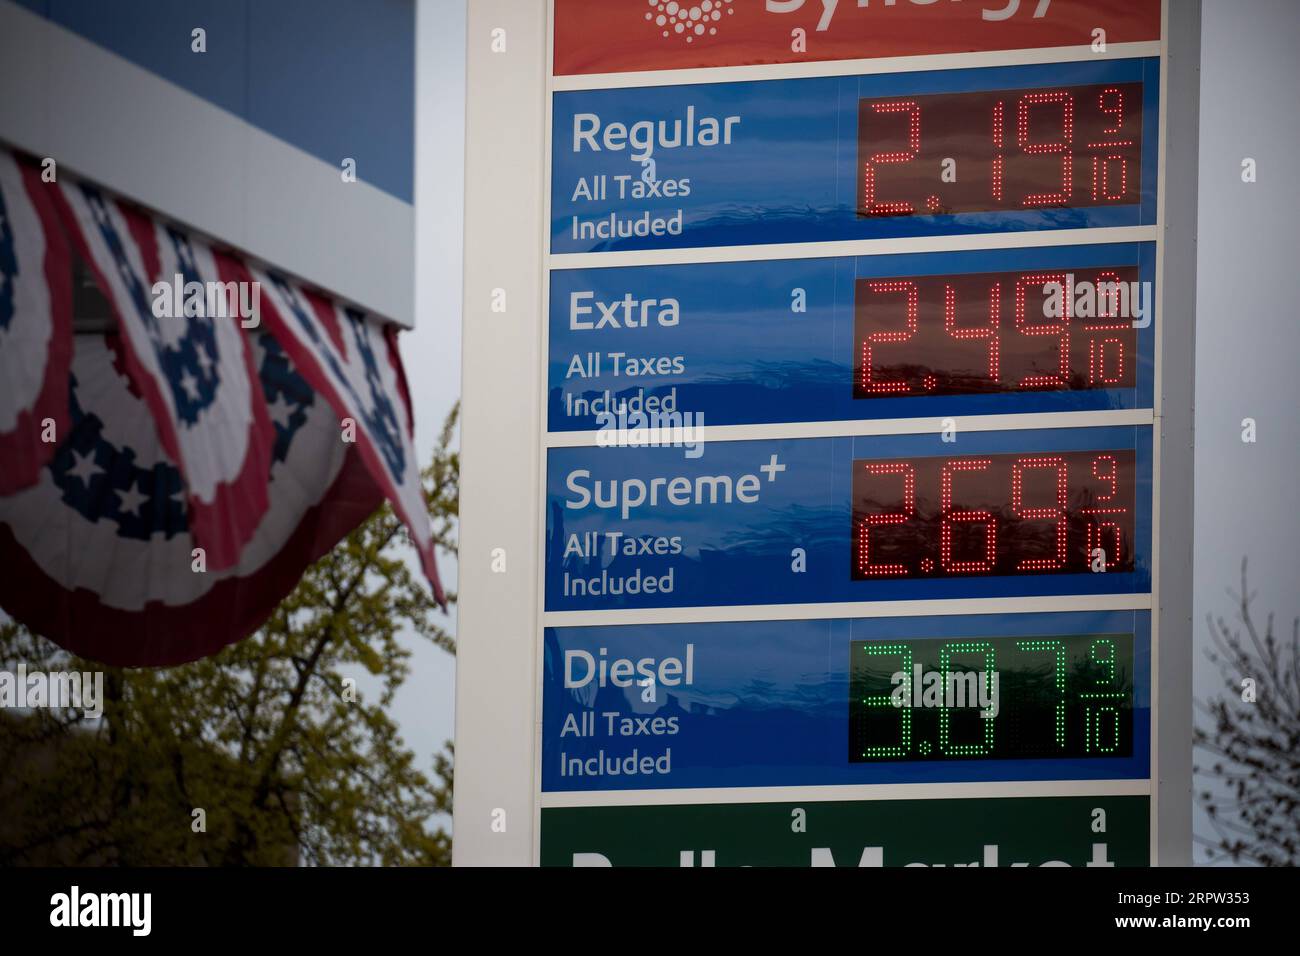 200421 -- NEW YORK, 21. April 2020 Xinhua -- Ein Schild zeigt die Gaspreise an einer Tankstelle im Brooklyn Borough von New York, USA, am 20. April 2020 an. Die US-Ölpreise stürzten am Montag zum ersten Mal in der Geschichte auf das negative Territorium, angetrieben durch den pandemiebedingten Nachfrageschock und die Angst vor einem Überangebot. Die West Texas Intermediate WTI for May lieferte 55,9 US-Dollar oder mehr als 305 Prozent, um an der New York Mercantile Exchange -37,63 Dollar pro Barrel zu bezahlen, was bedeutet, dass die Produzenten Käufer bezahlen würden, um Öl von ihren Händen zu nehmen. Foto von Michael Nagle/Xinhua U.S.-NEW YORK- Stockfoto